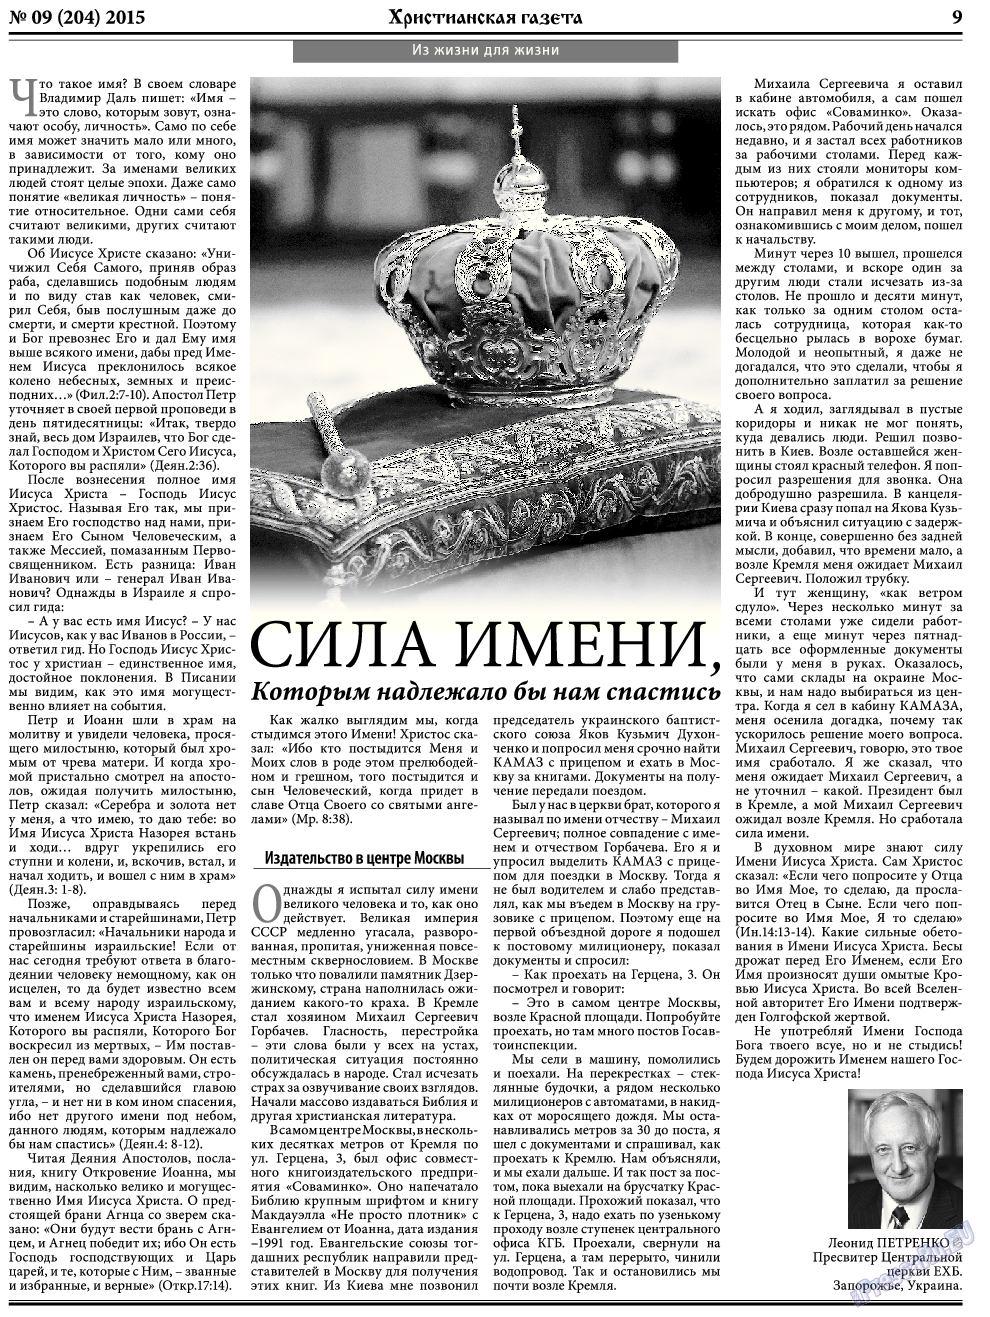 Христианская газета, газета. 2015 №9 стр.9